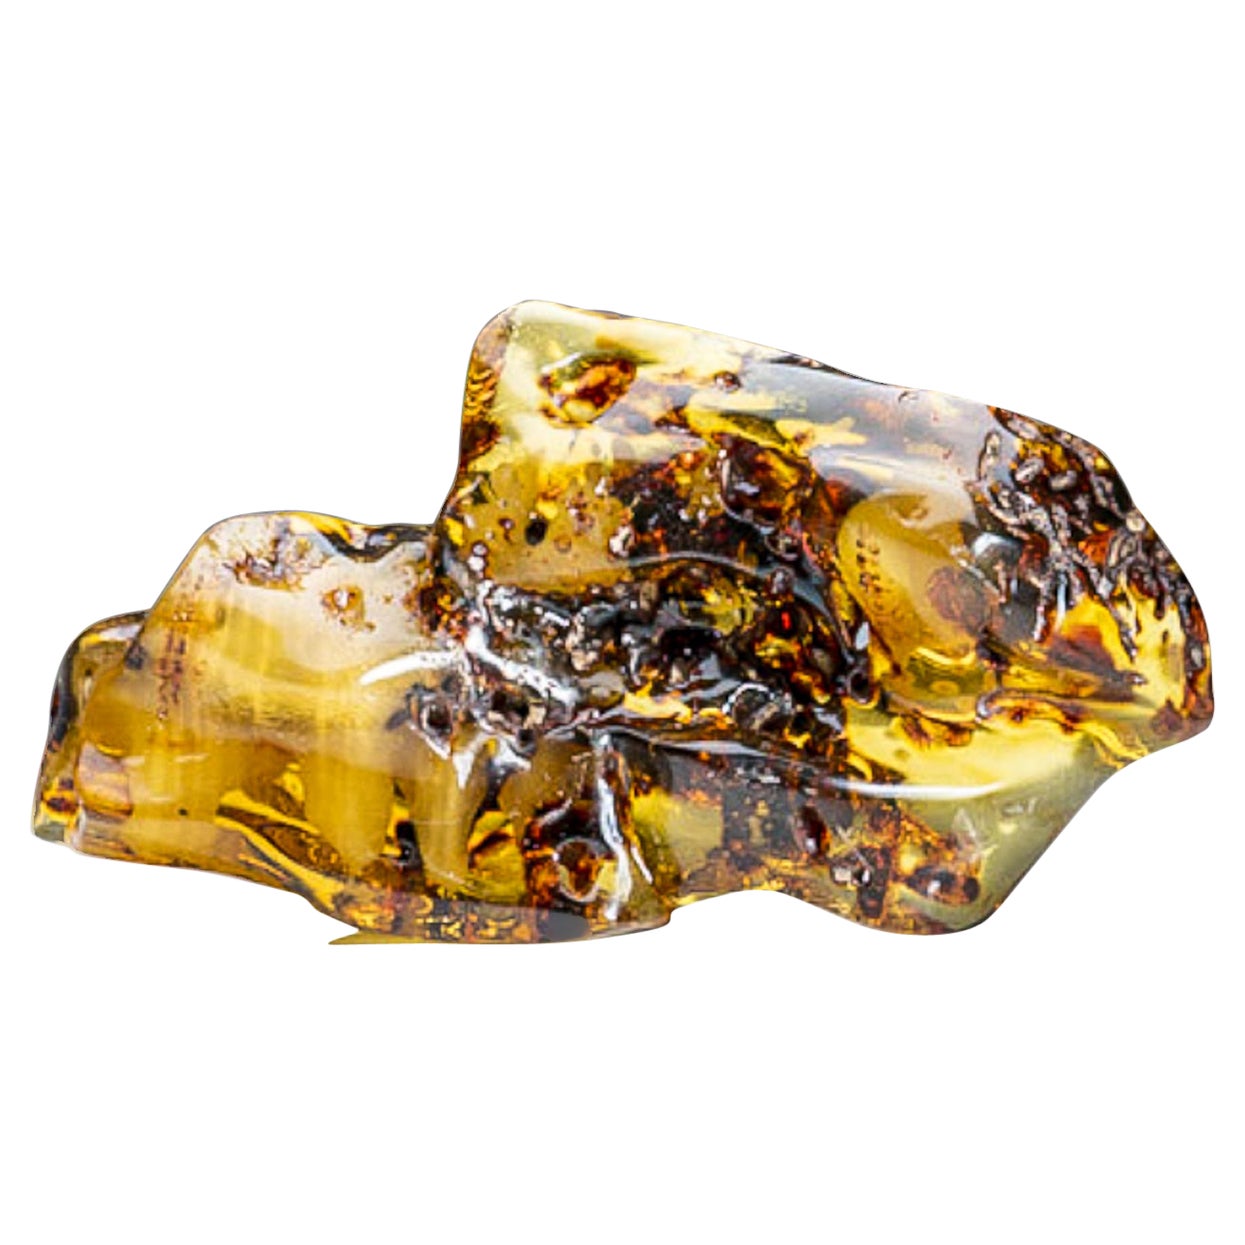 Véritable ambre copal de Colombie de qualité gemme (362,8 grammes) en vente